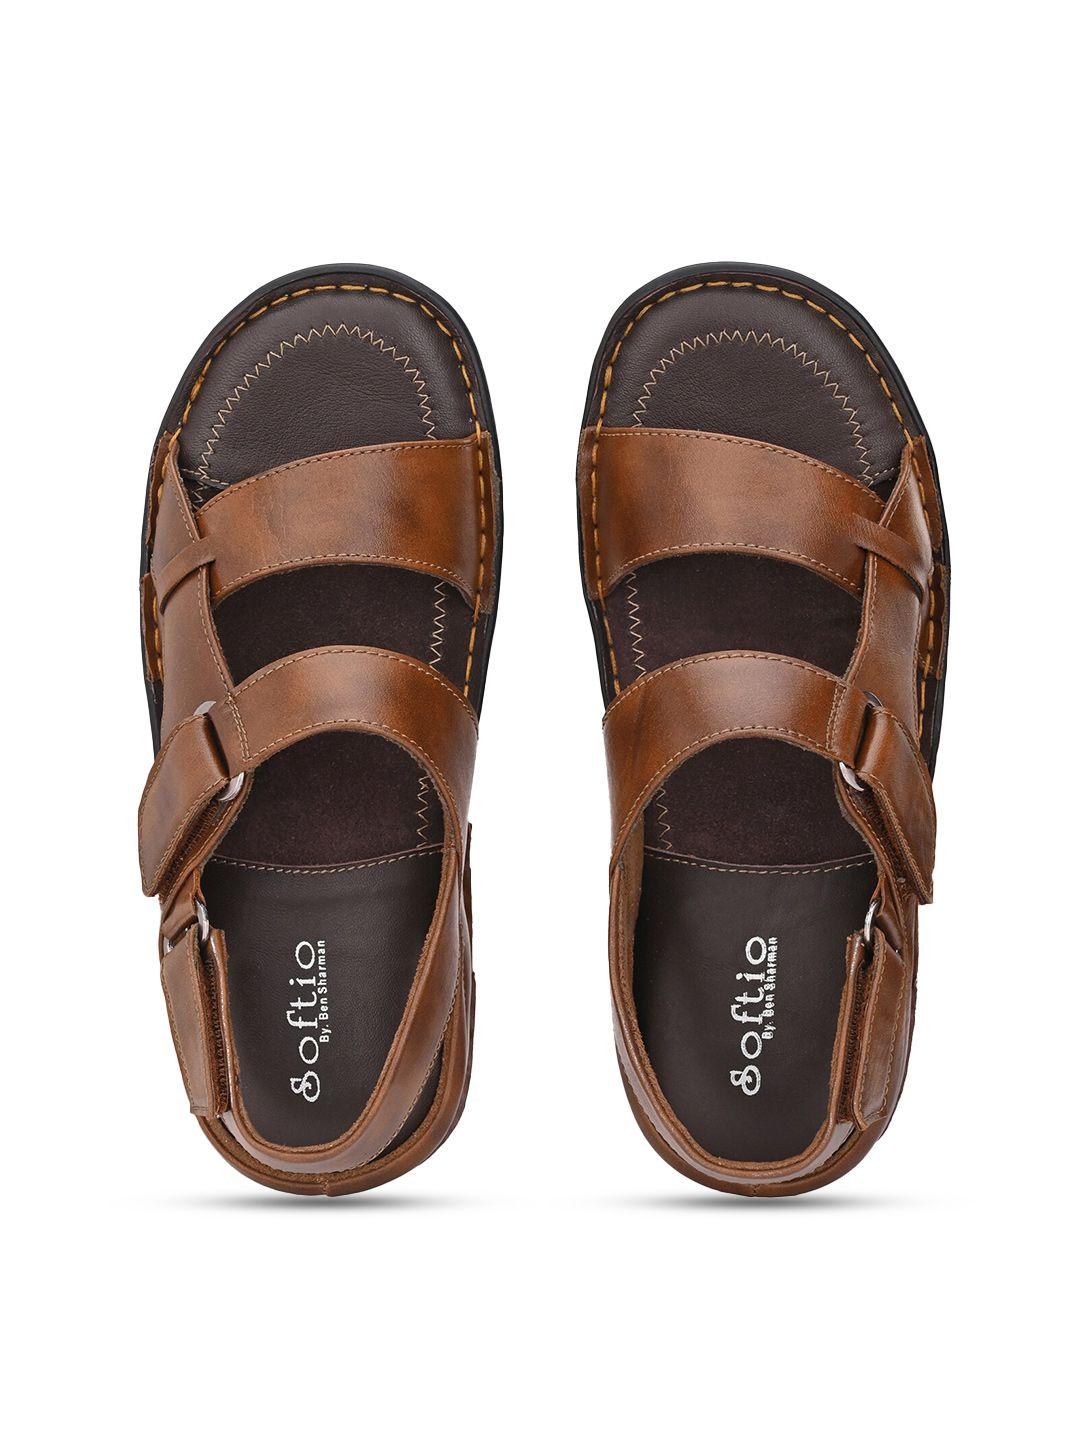 softio-men-brown-comfort-sandals